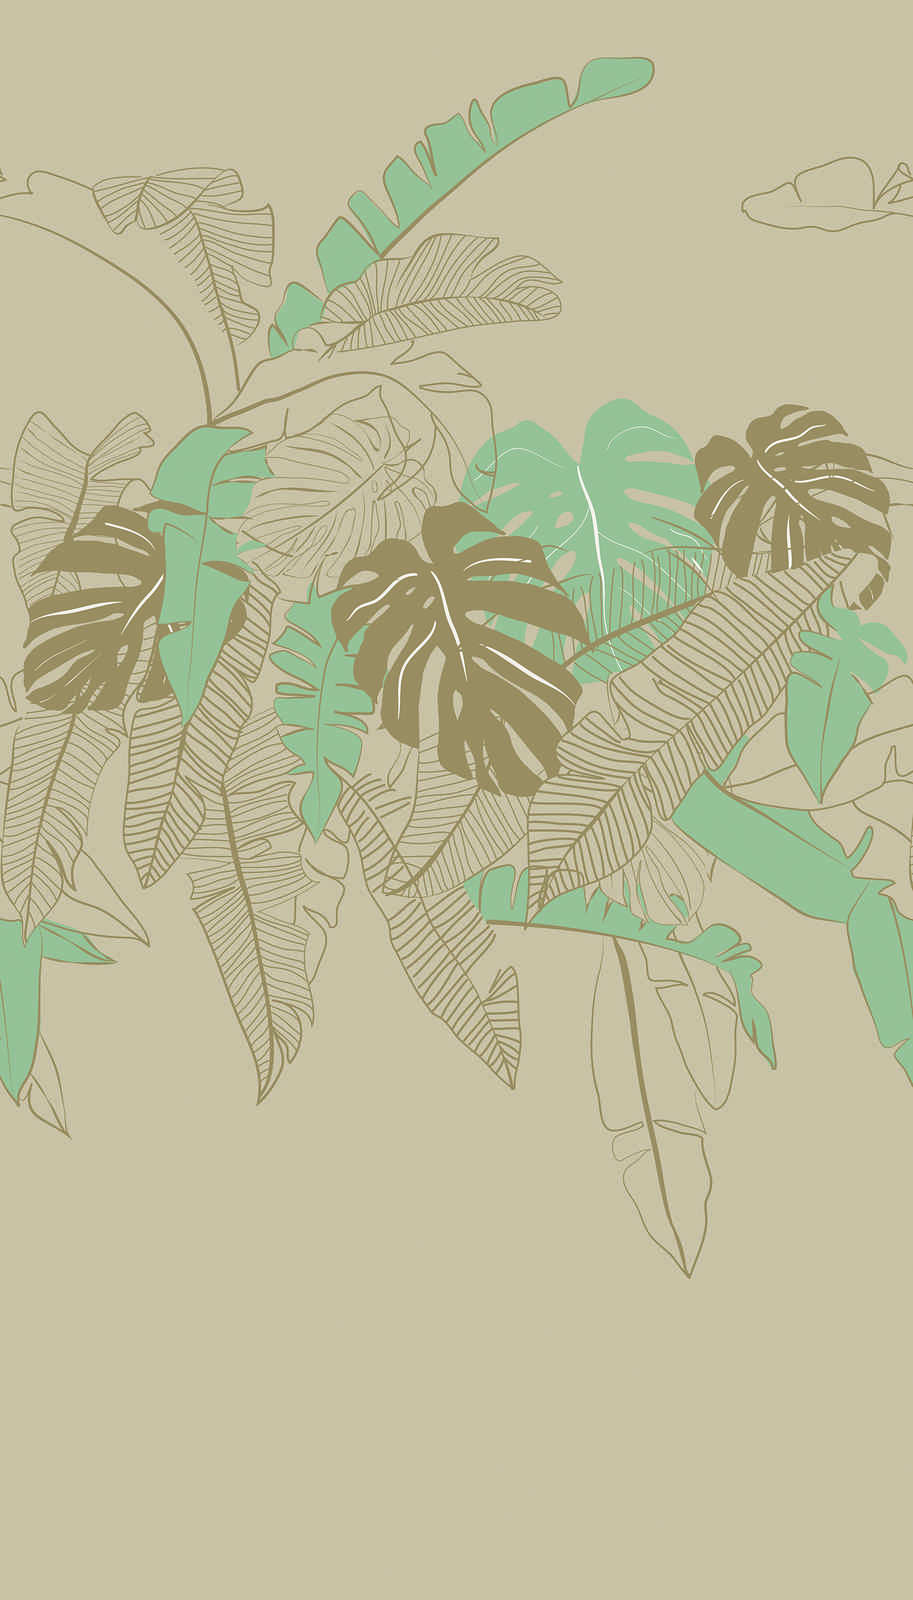             Vliesbehang met junglelook - beige, groen, bruin
        